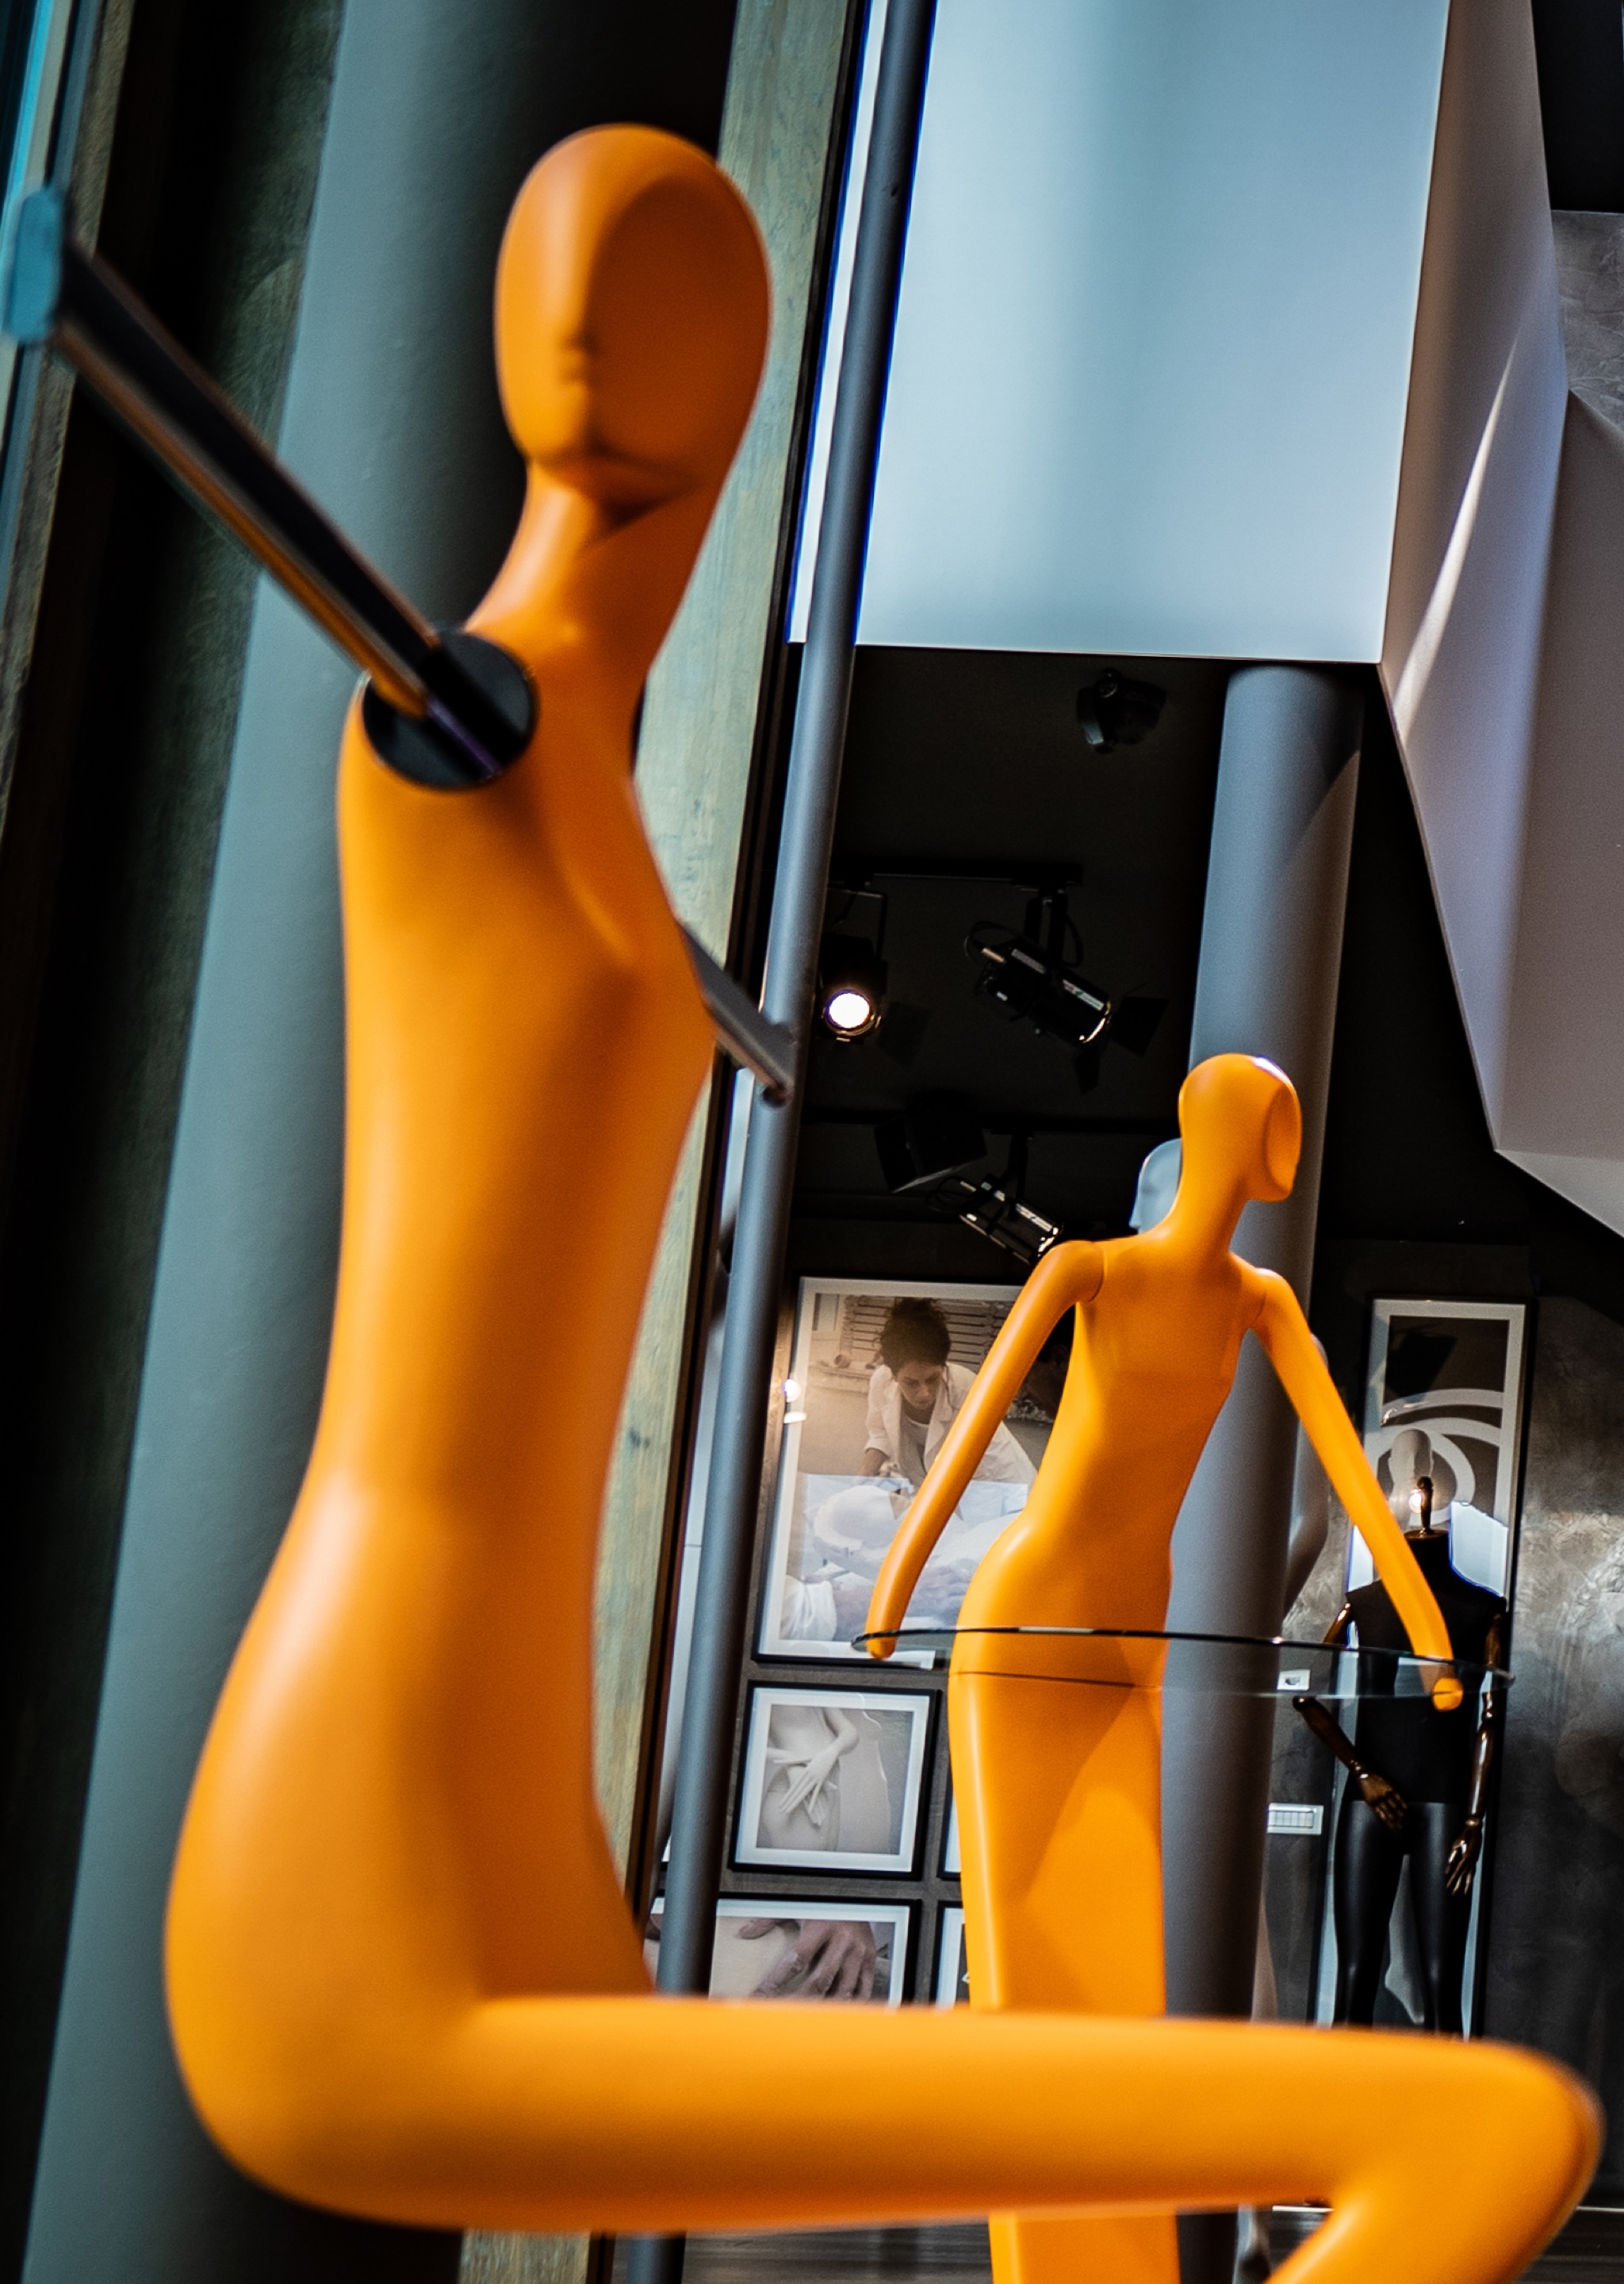 schlappi mannequins milan design week exhibition